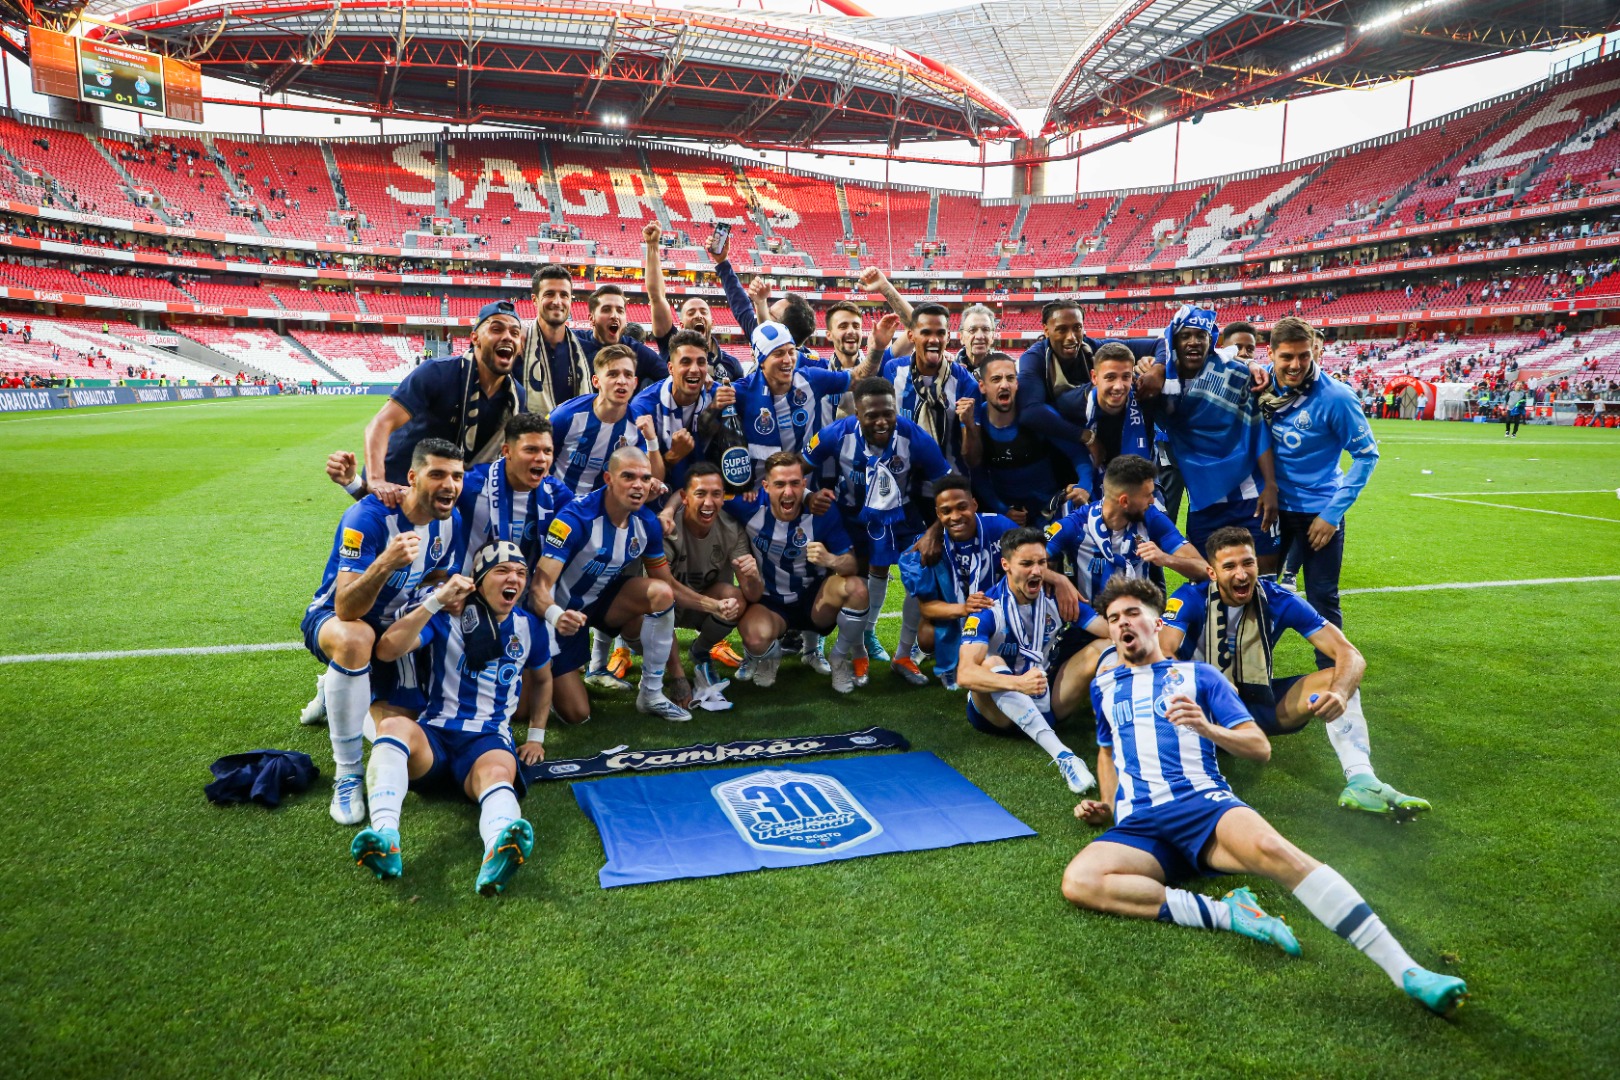 Porto, ezeli rakibinin sahasında şampiyon oldu